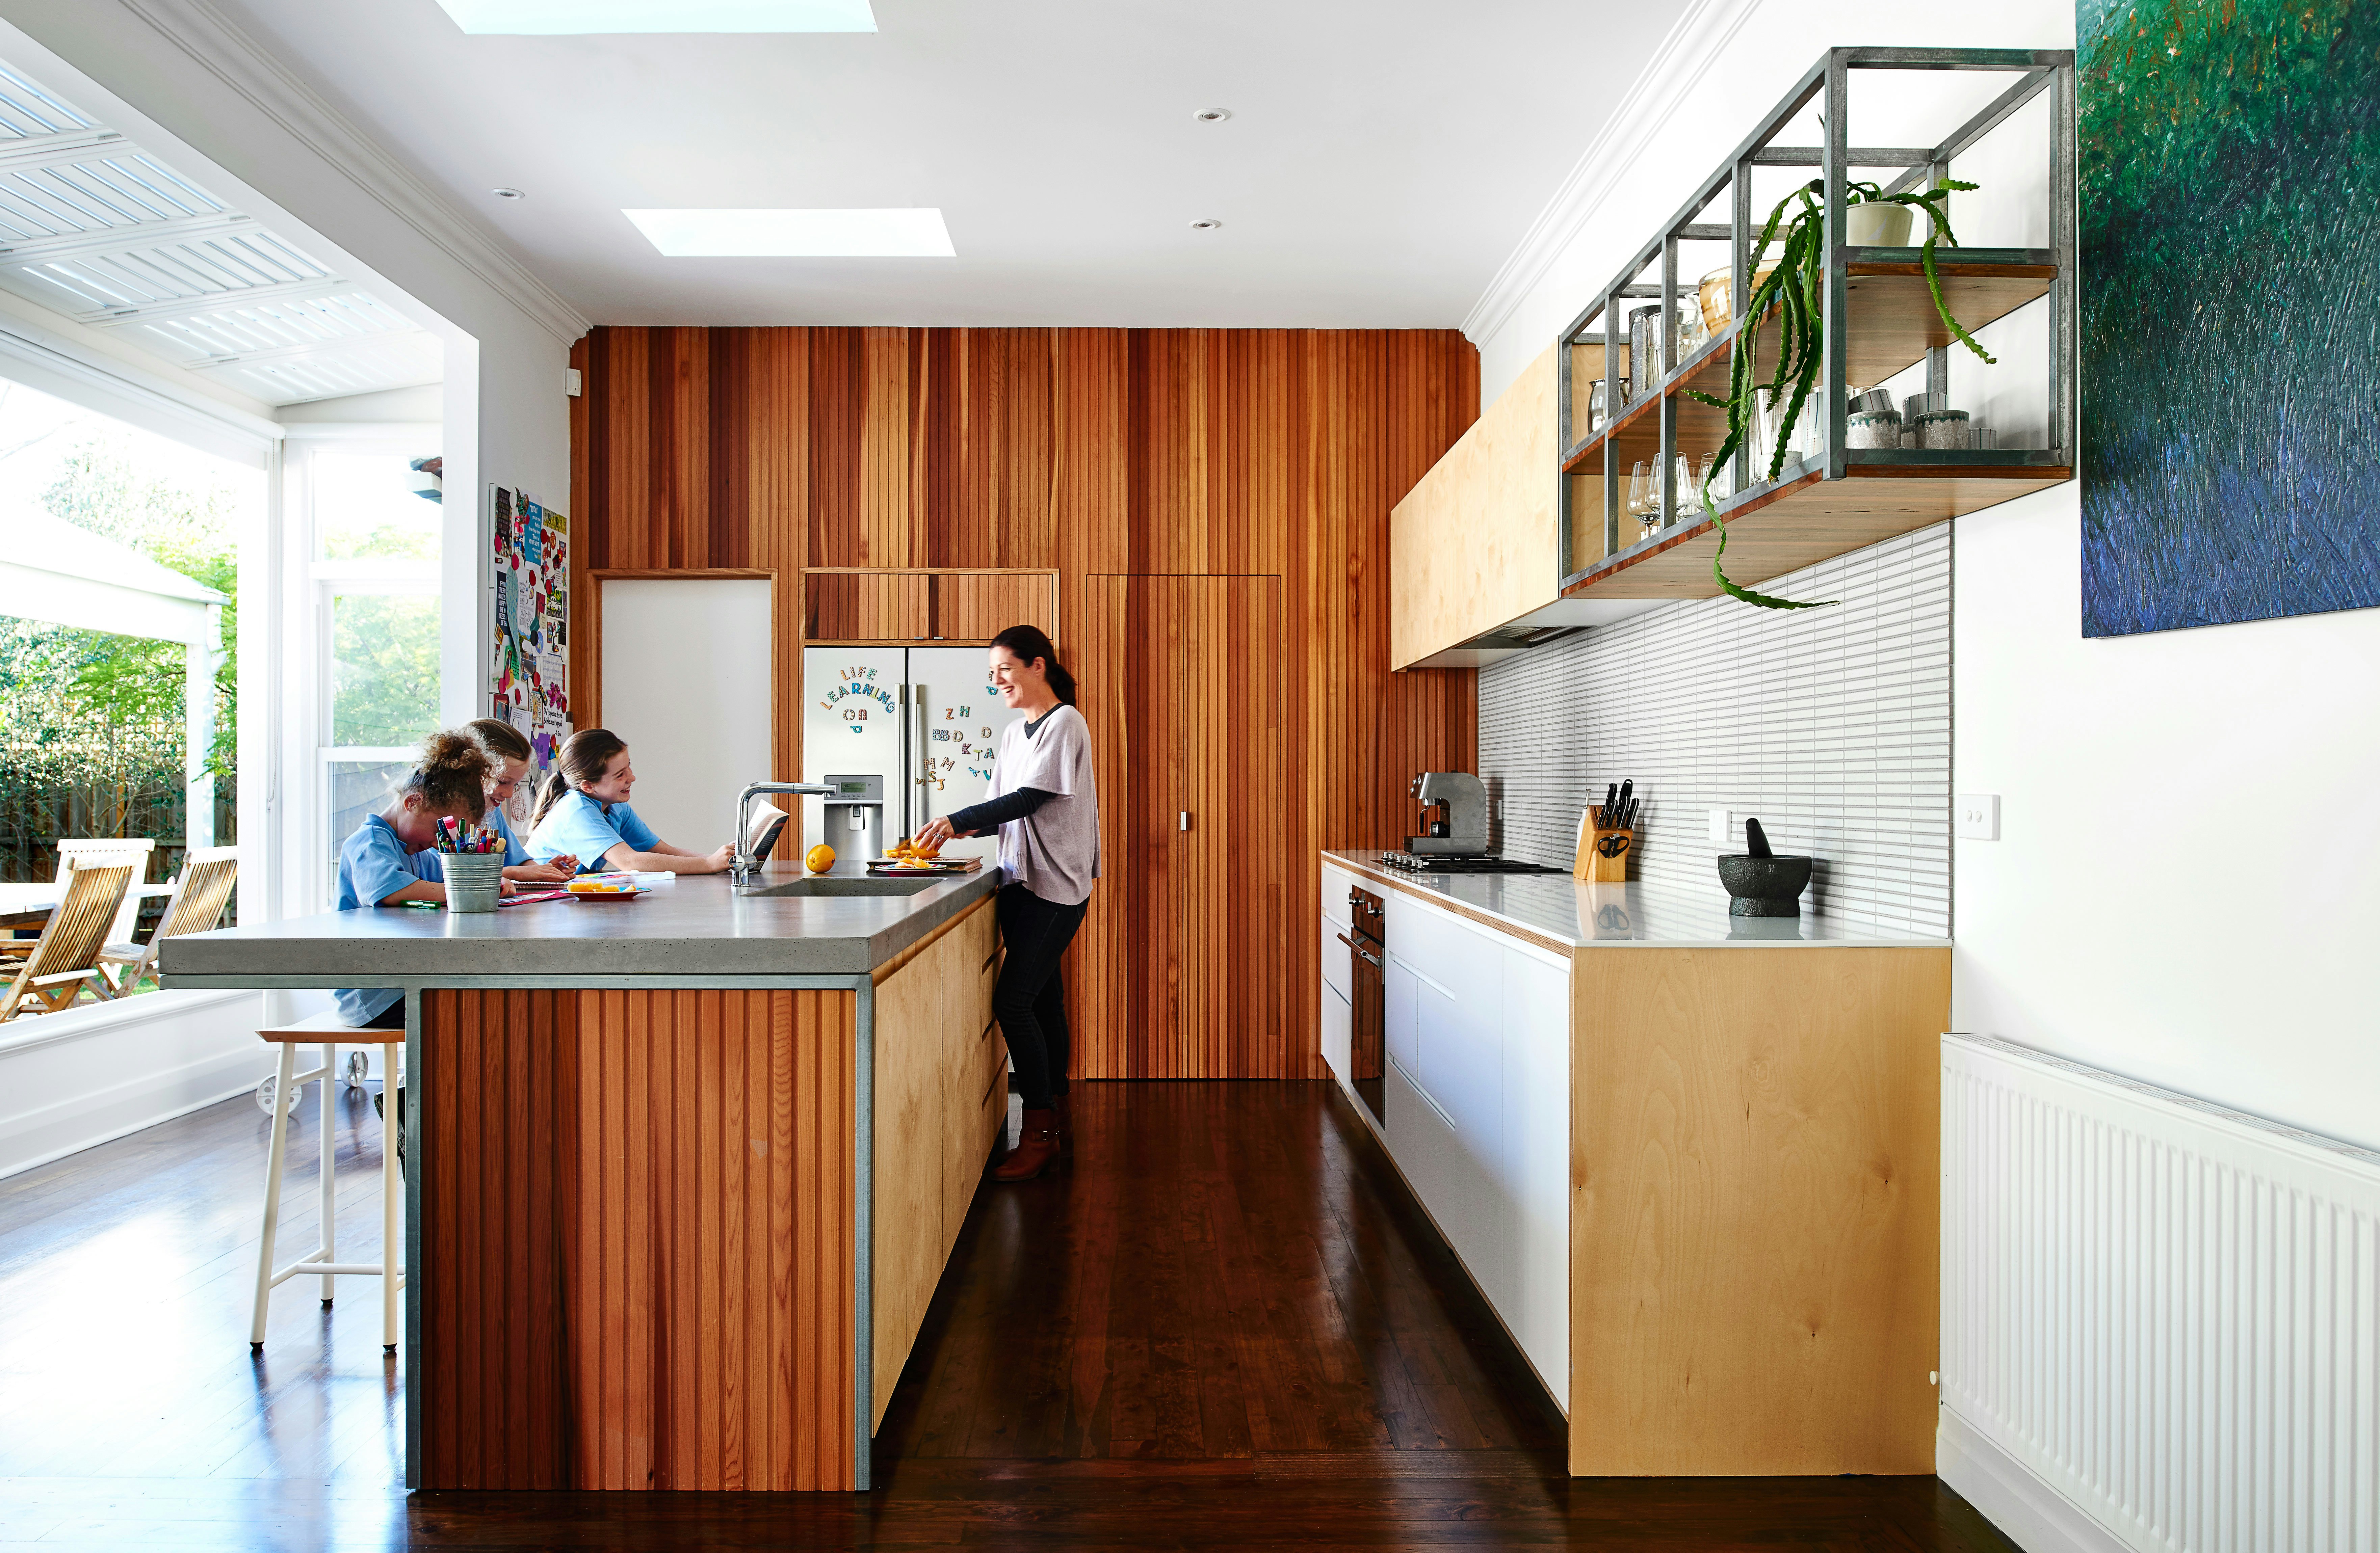 23 Stunning Gourmet Kitchen Design Ideas  Gourmet kitchen design,  Contemporary kitchen cabinets, Contemporary kitchen